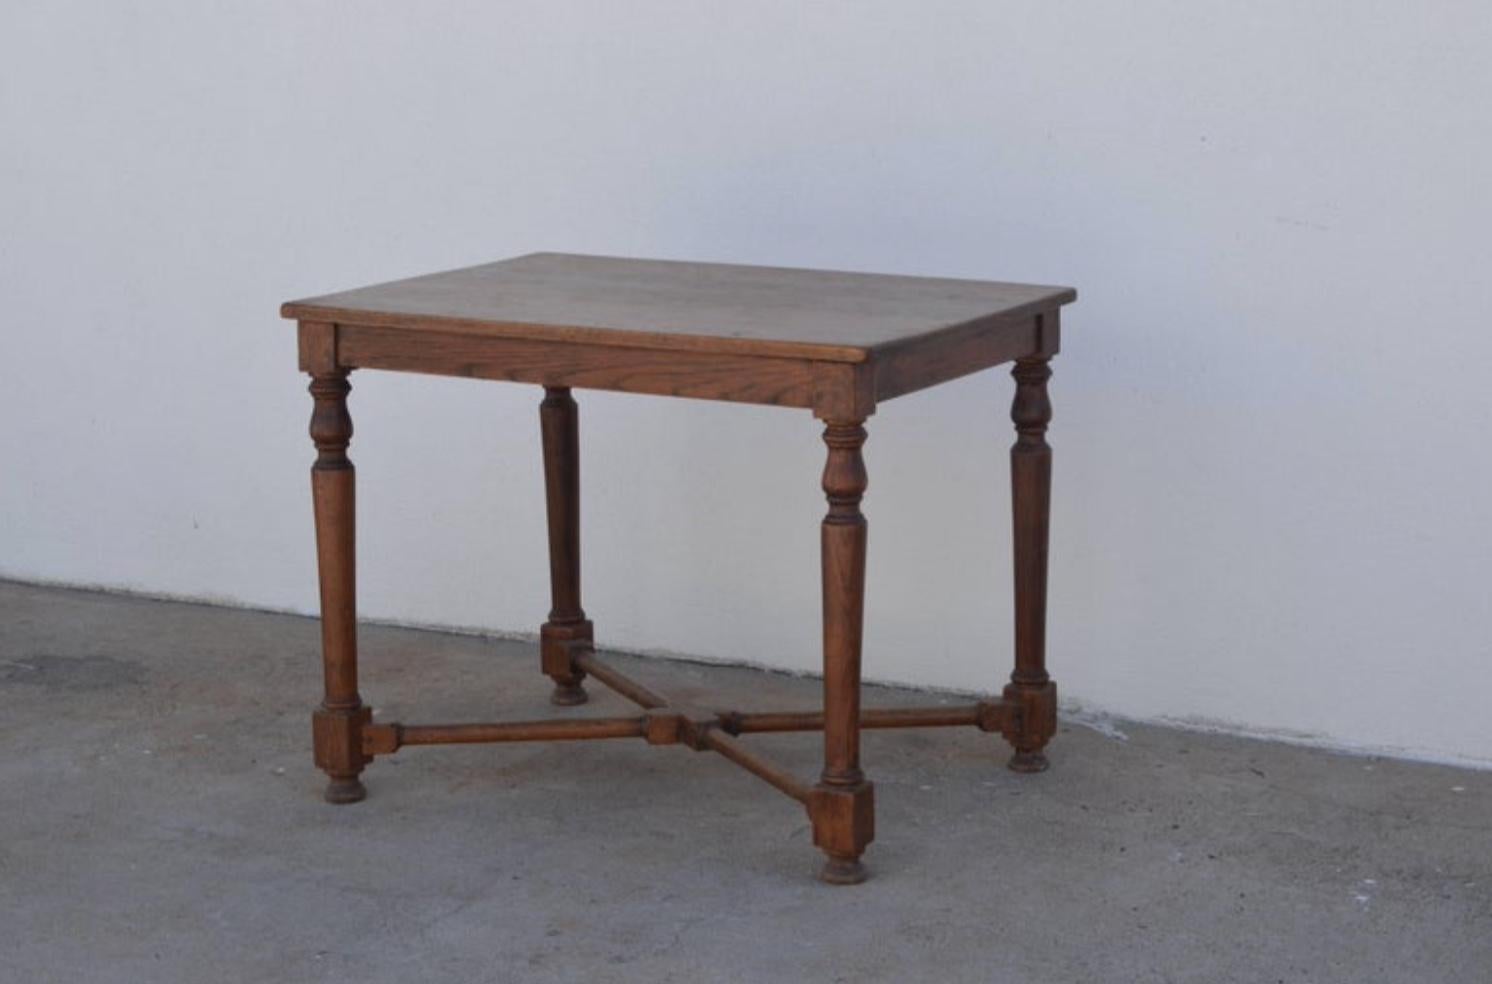 Eleganter architektonischer Tisch aus französischem Eichenholz für die Mitte oder das Spiel. Sehr solide. Hervorragend auch als kleiner Tisch oder Schreibtisch geeignet.